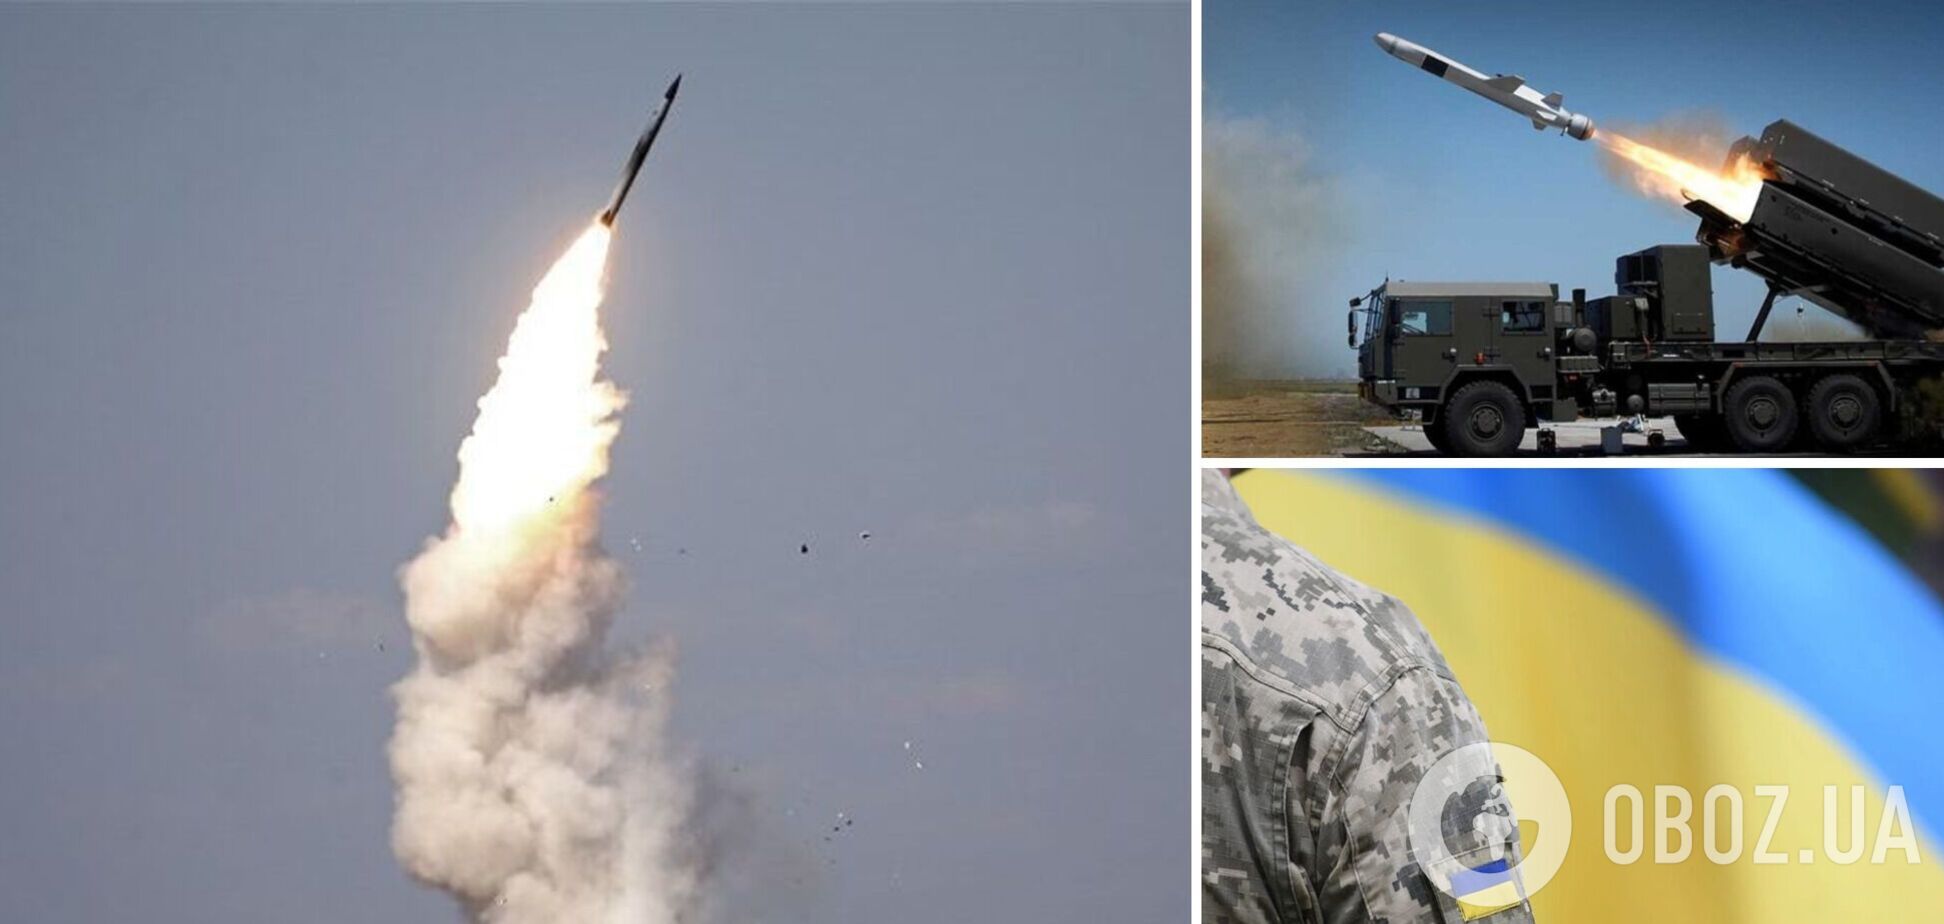 Десятки ракет сбиты: украинская ПВО показала впечатляющий результат во время массового удара РФ 5 декабря